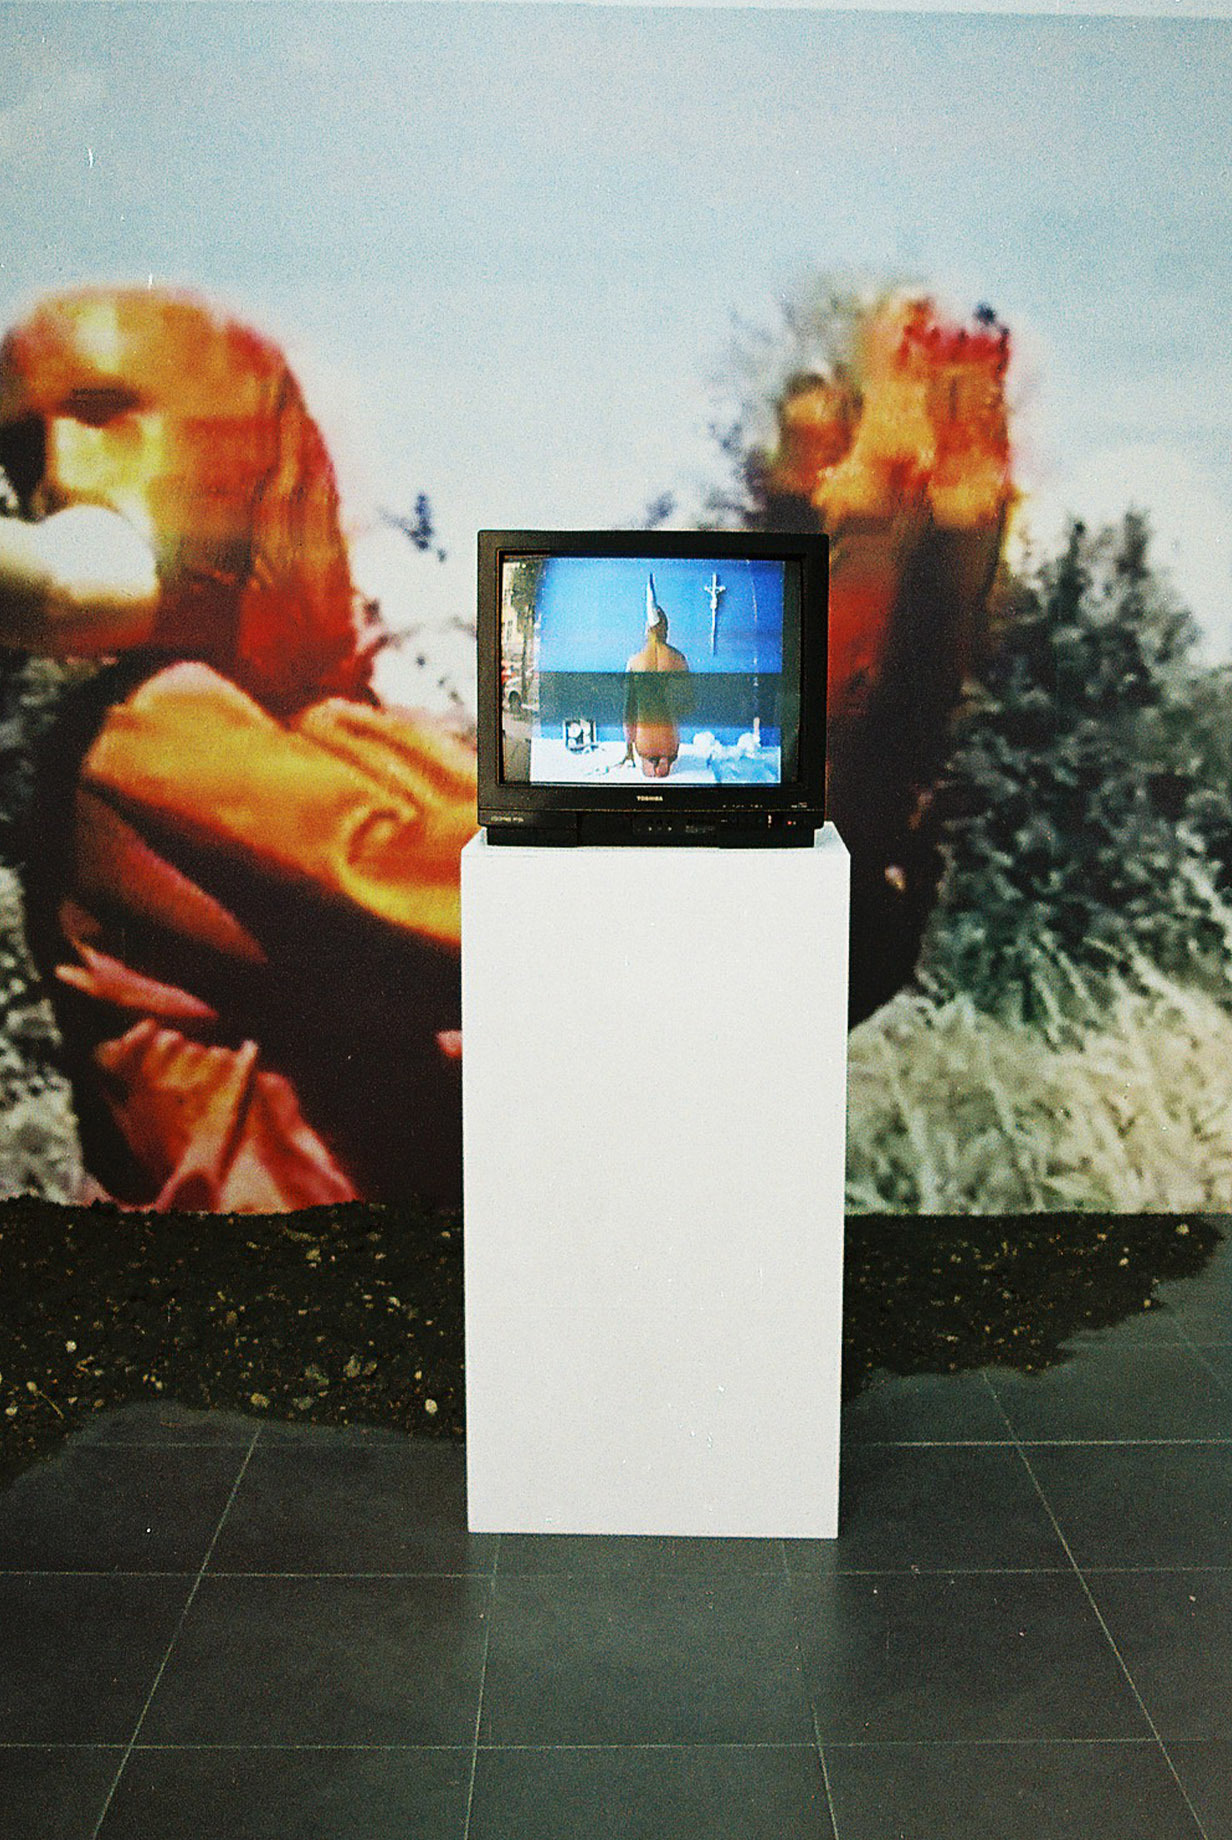 Shalva Nikvashvili, Tamada, 2021, Video, wallpaper,installation view